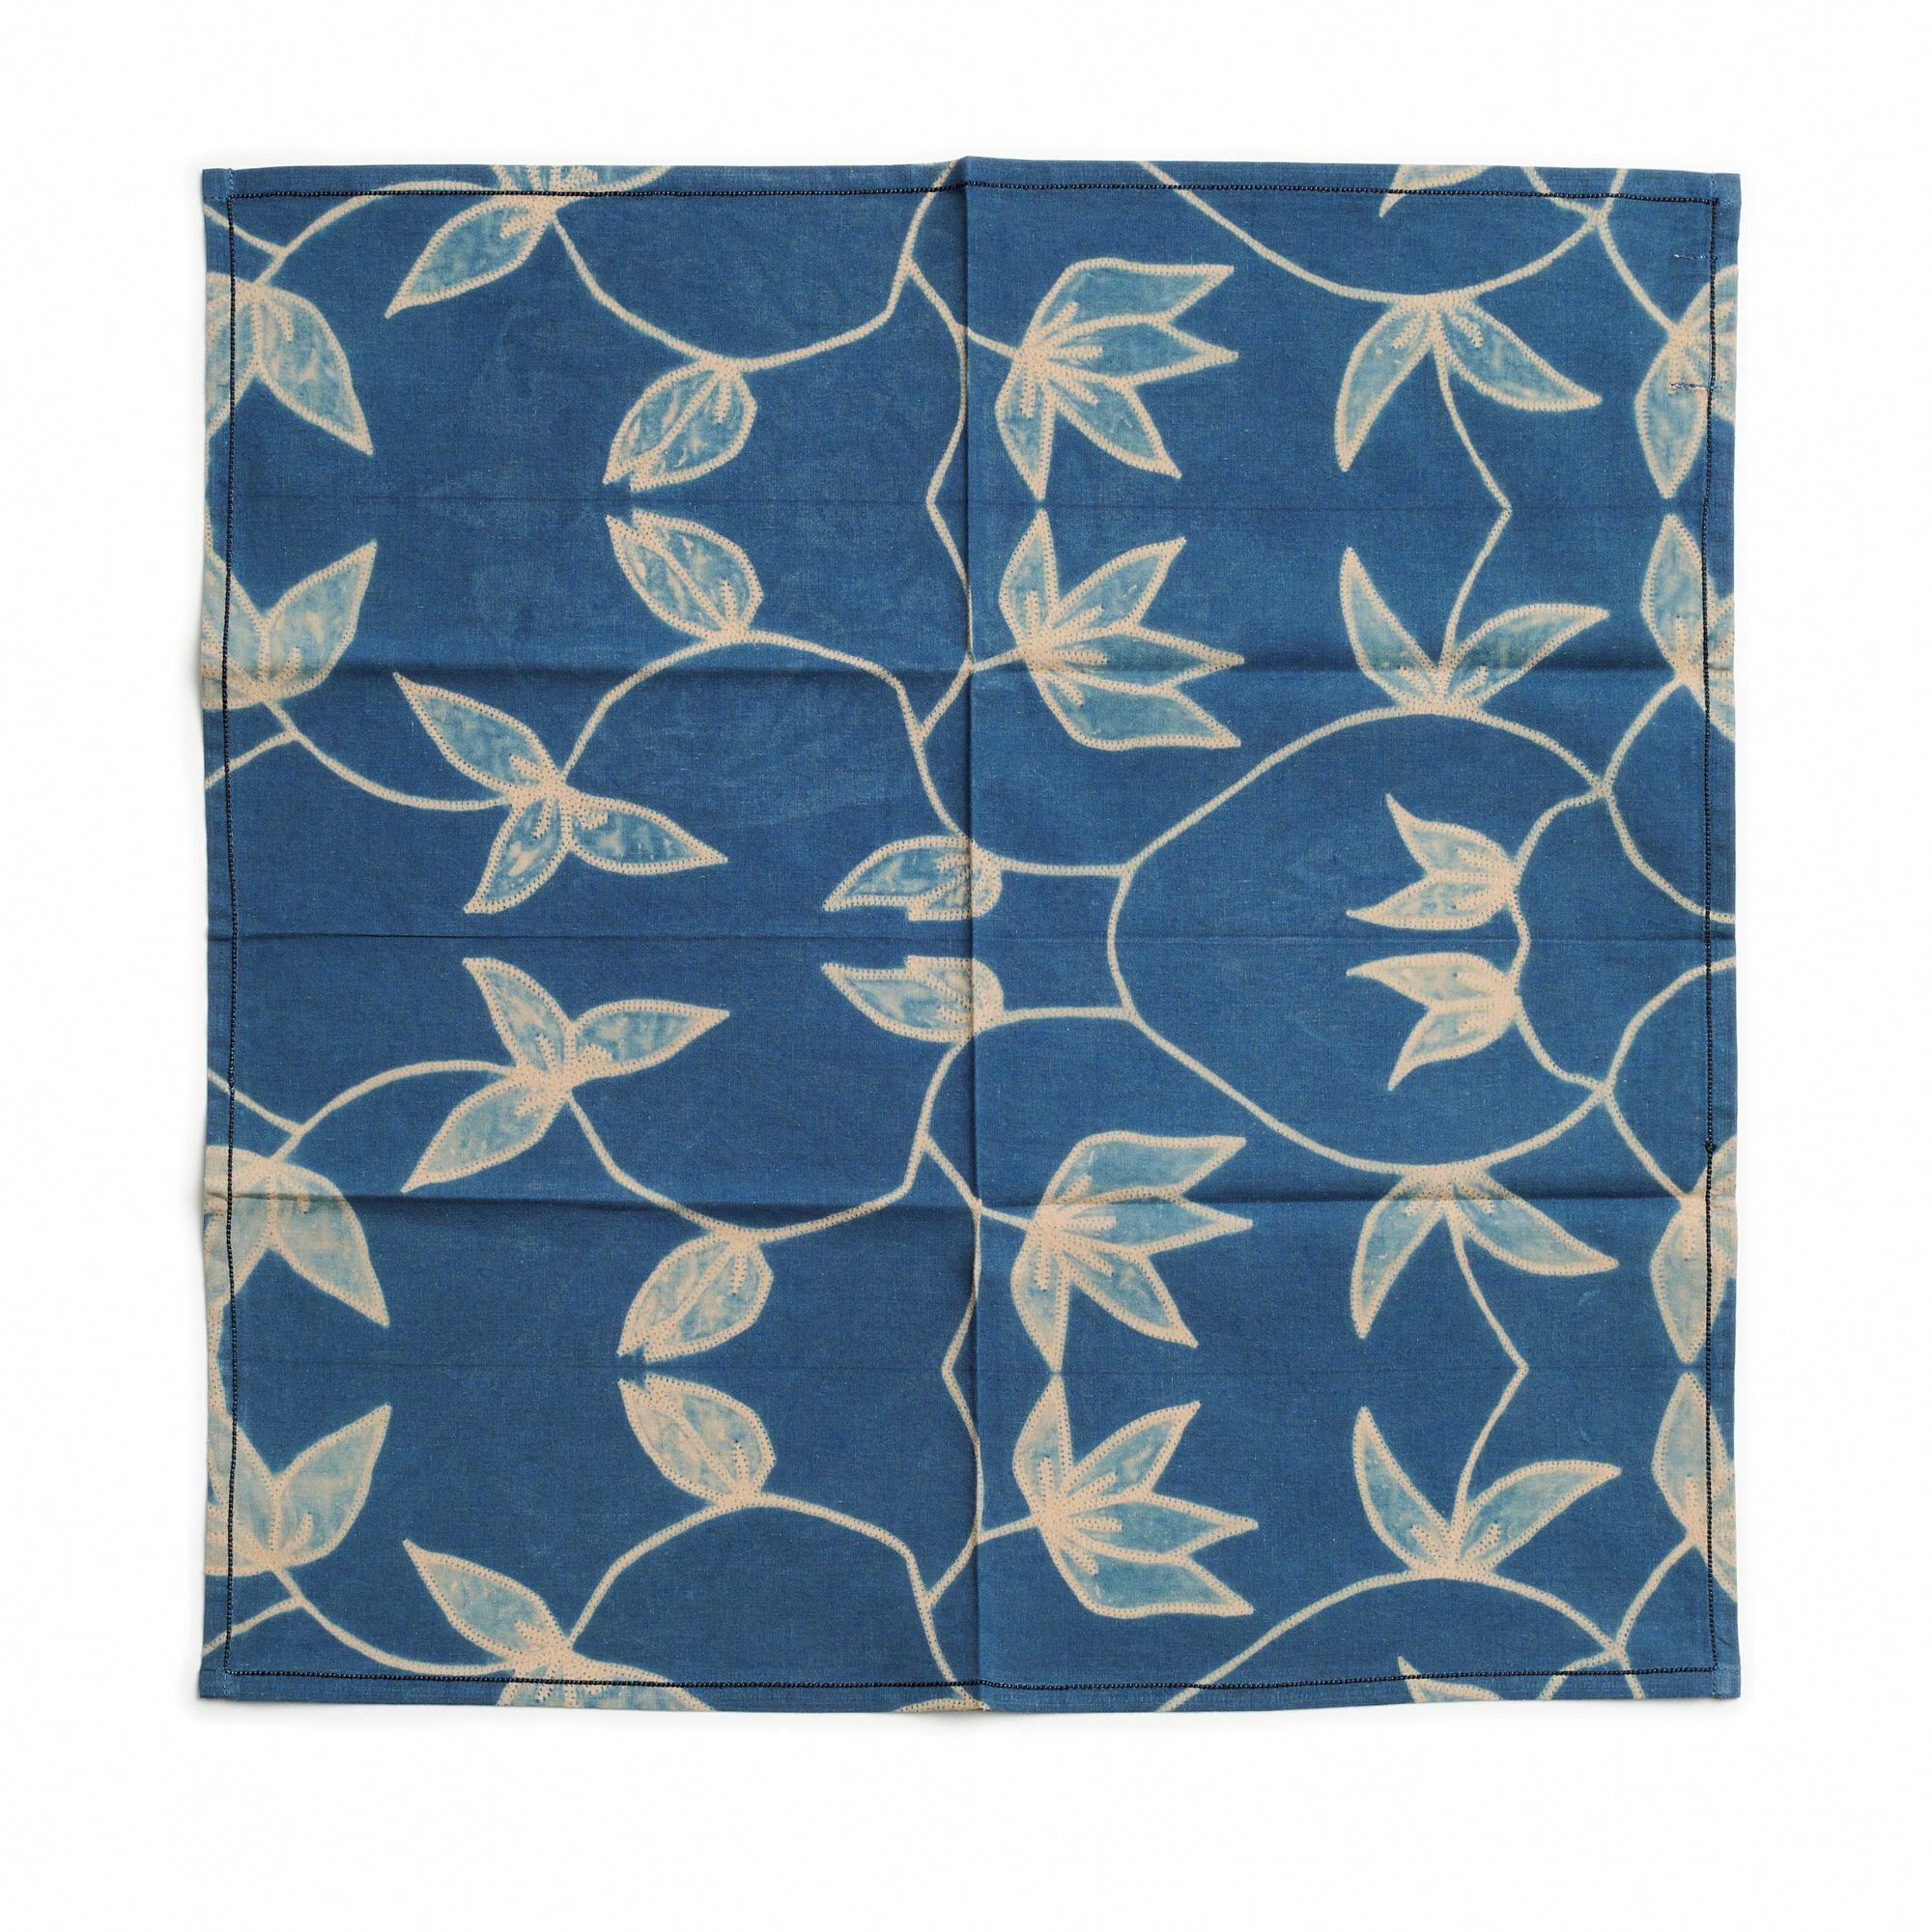 Folio Indigo  La serviette de table est une serviette artisanale unique et moderne. Créée de manière artistique et éthique par des artisans en Inde en utilisant le shibori.  en utilisant uniquement des teintures naturelles pures. Il s'agit d'une